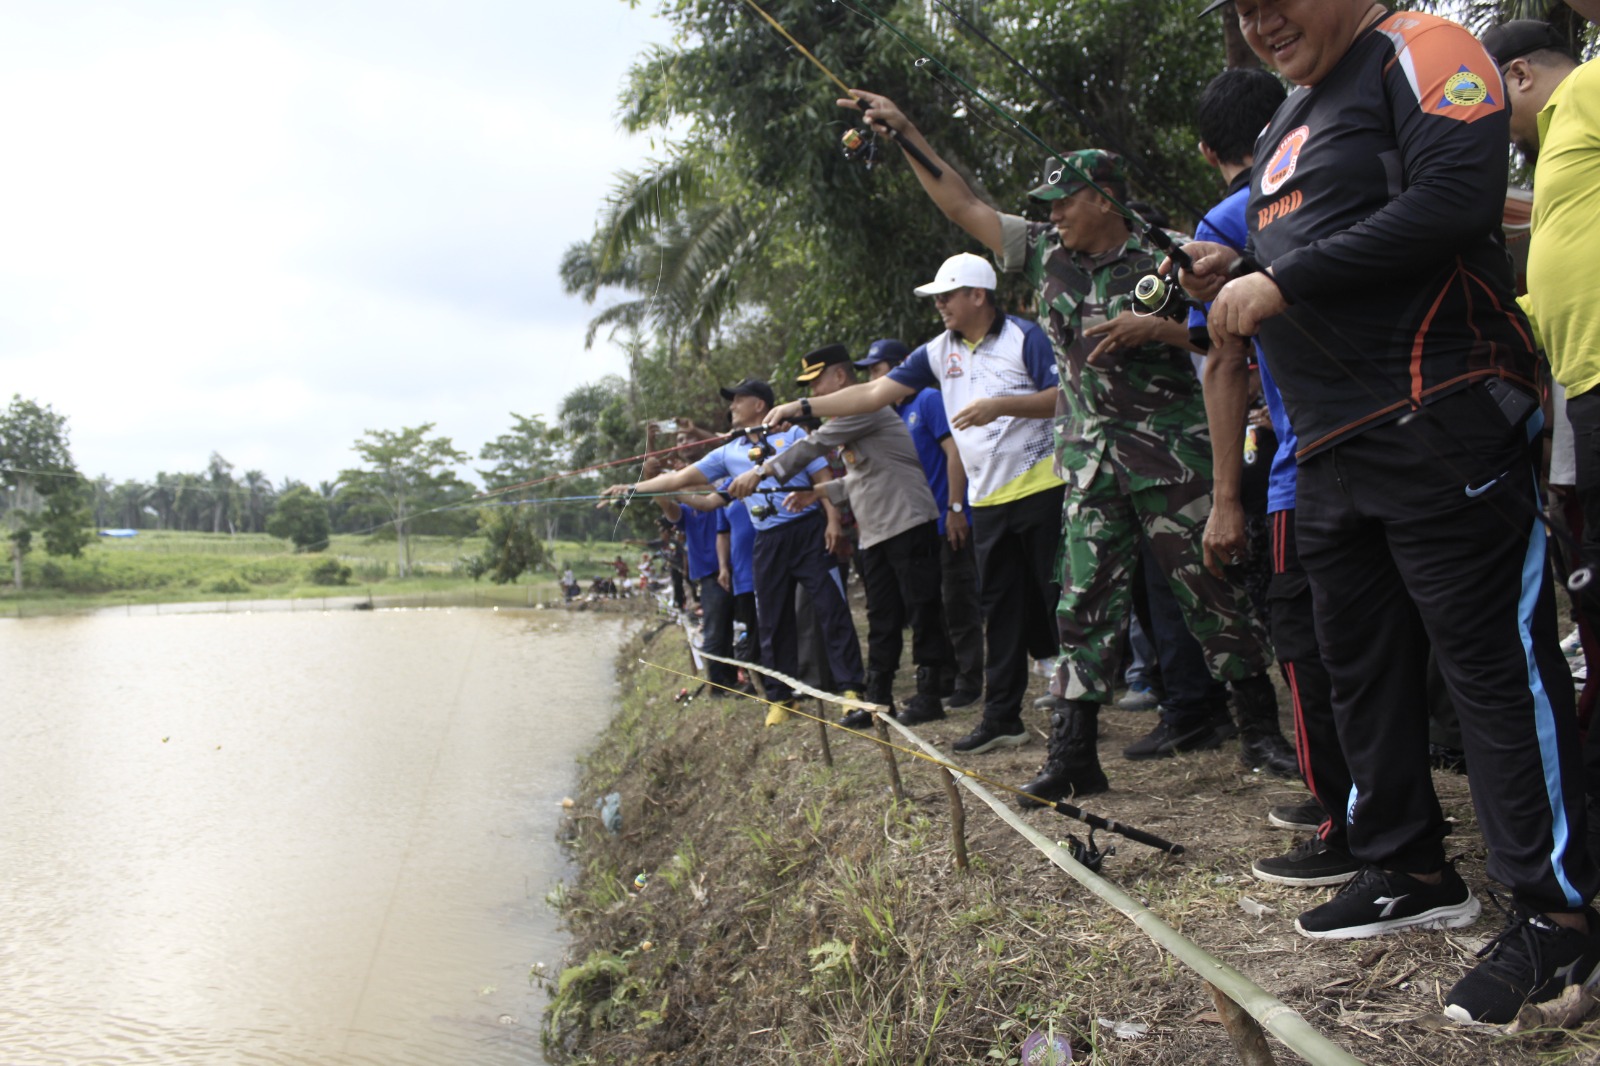 HUT ke 27 Kabupaten Tuba Gelar Lomba Mancing di Embung Kampung Panca Mulya